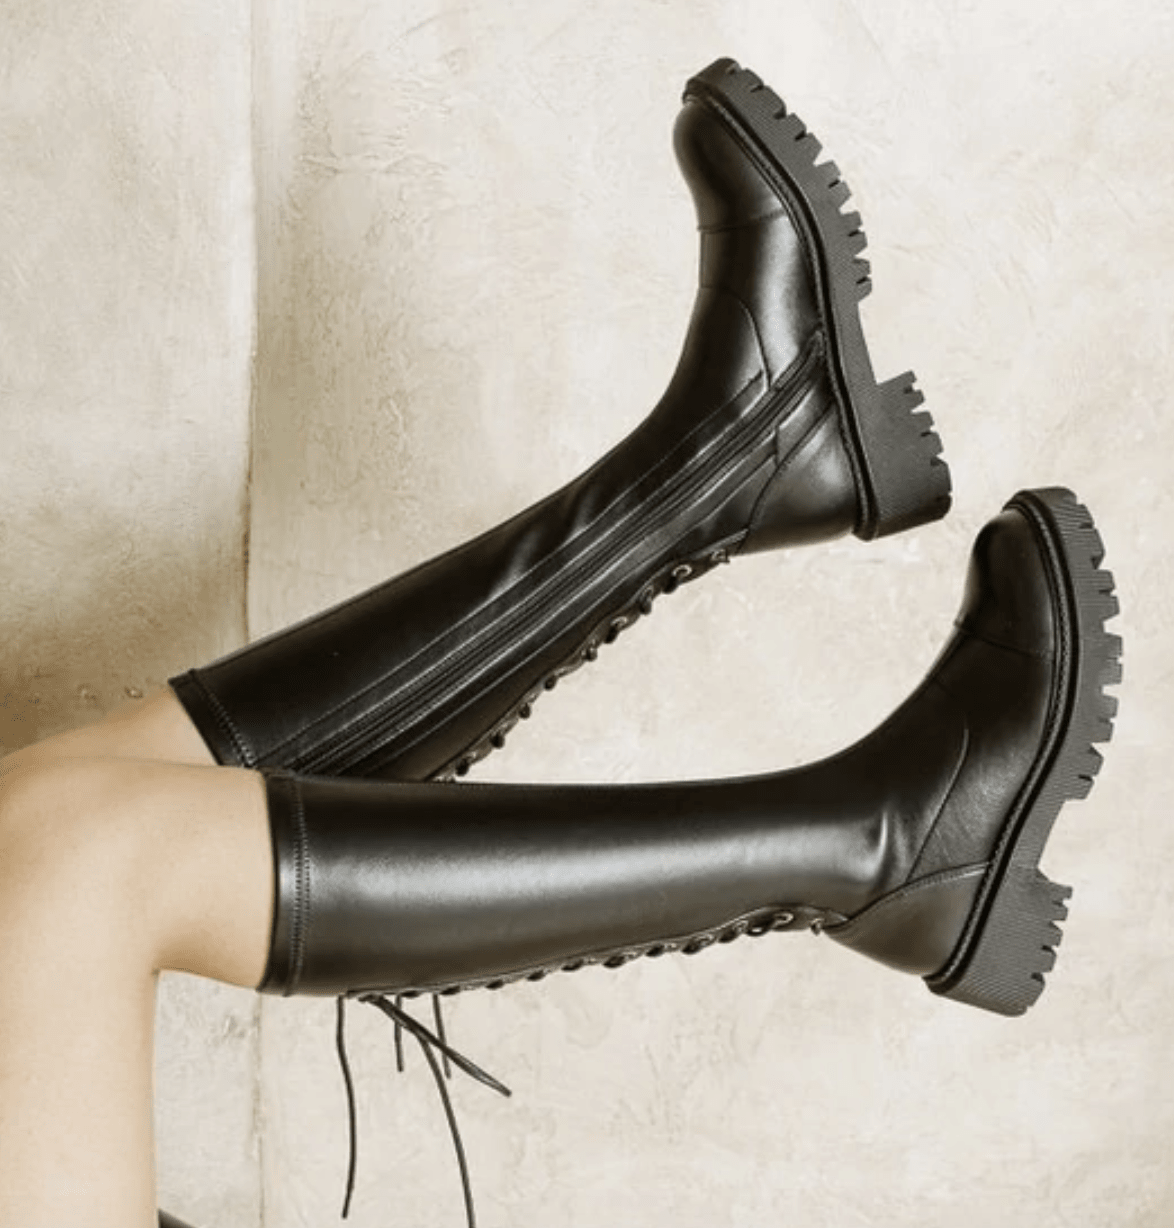 15 Best Knee-High Boots 2023 — Best Knee-High Boots for Women